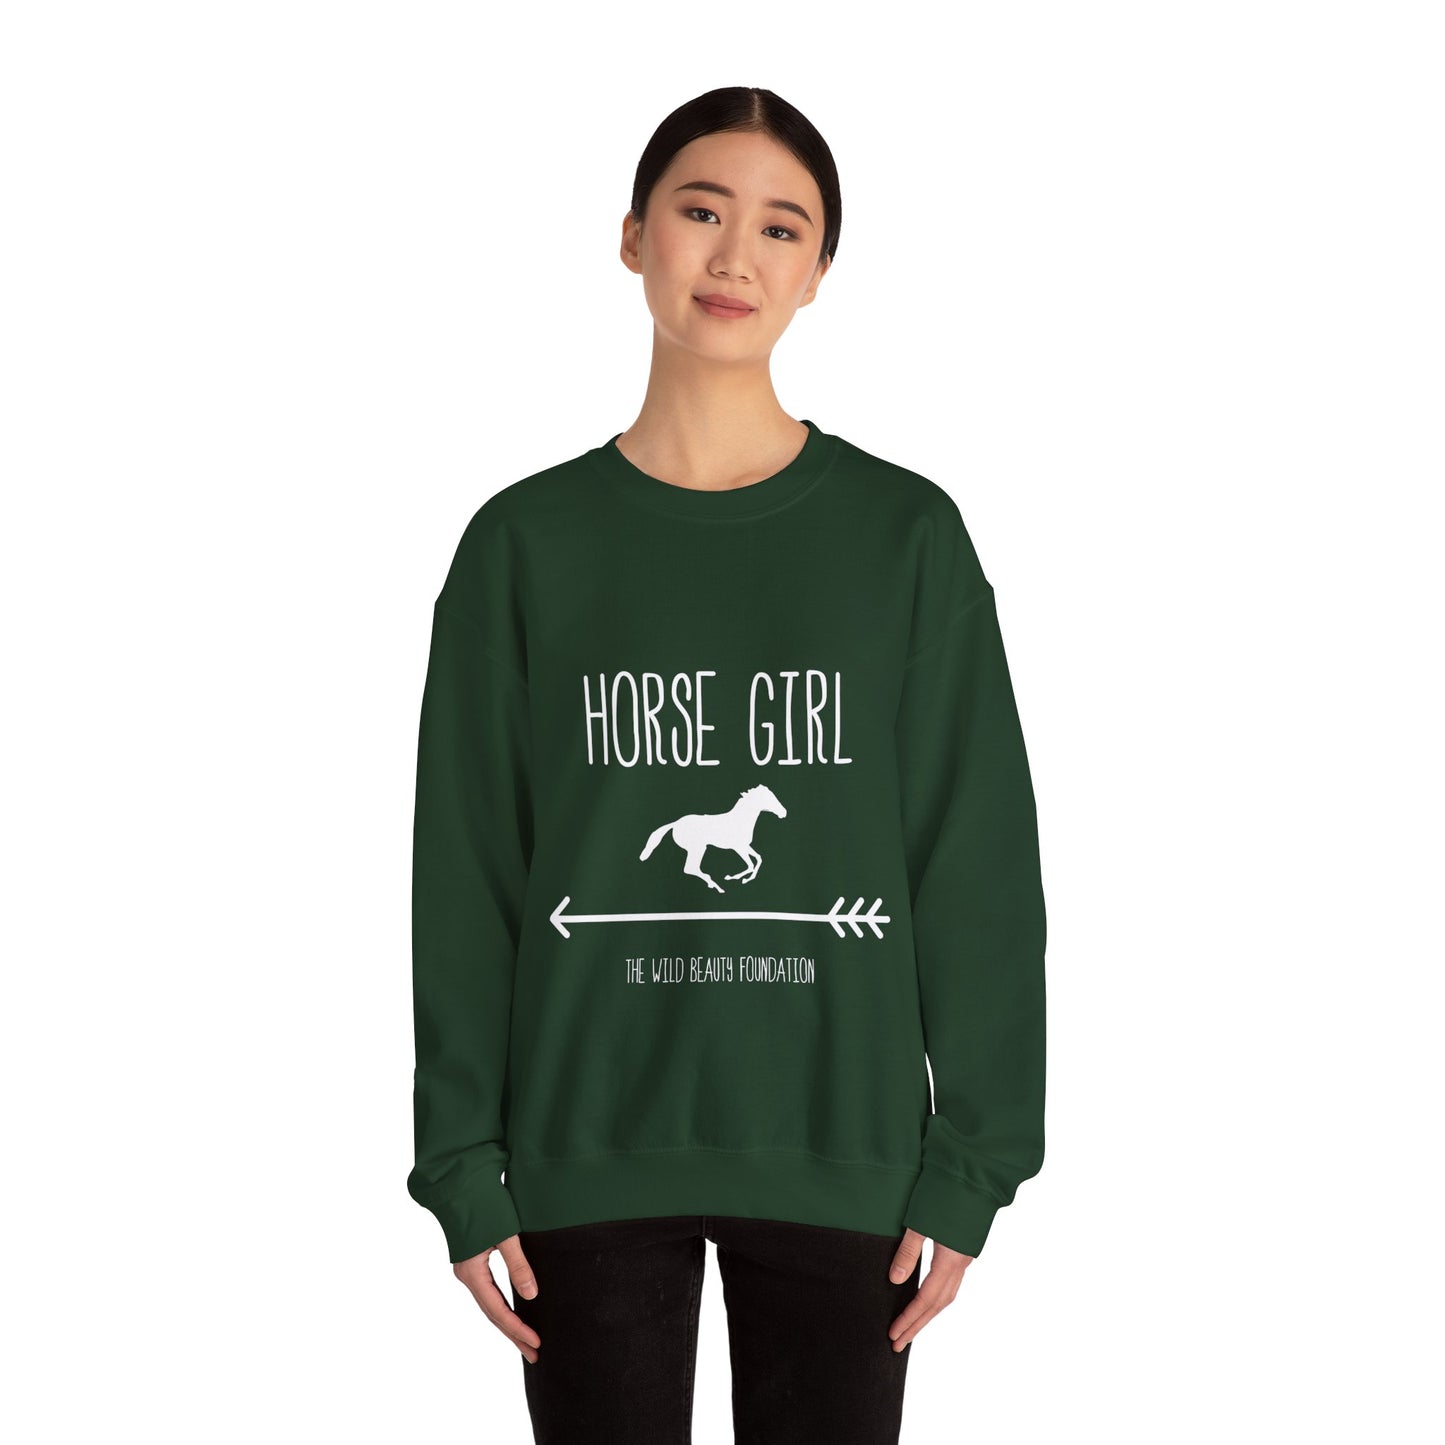 "Horse Girl" Crewneck Sweatshirt